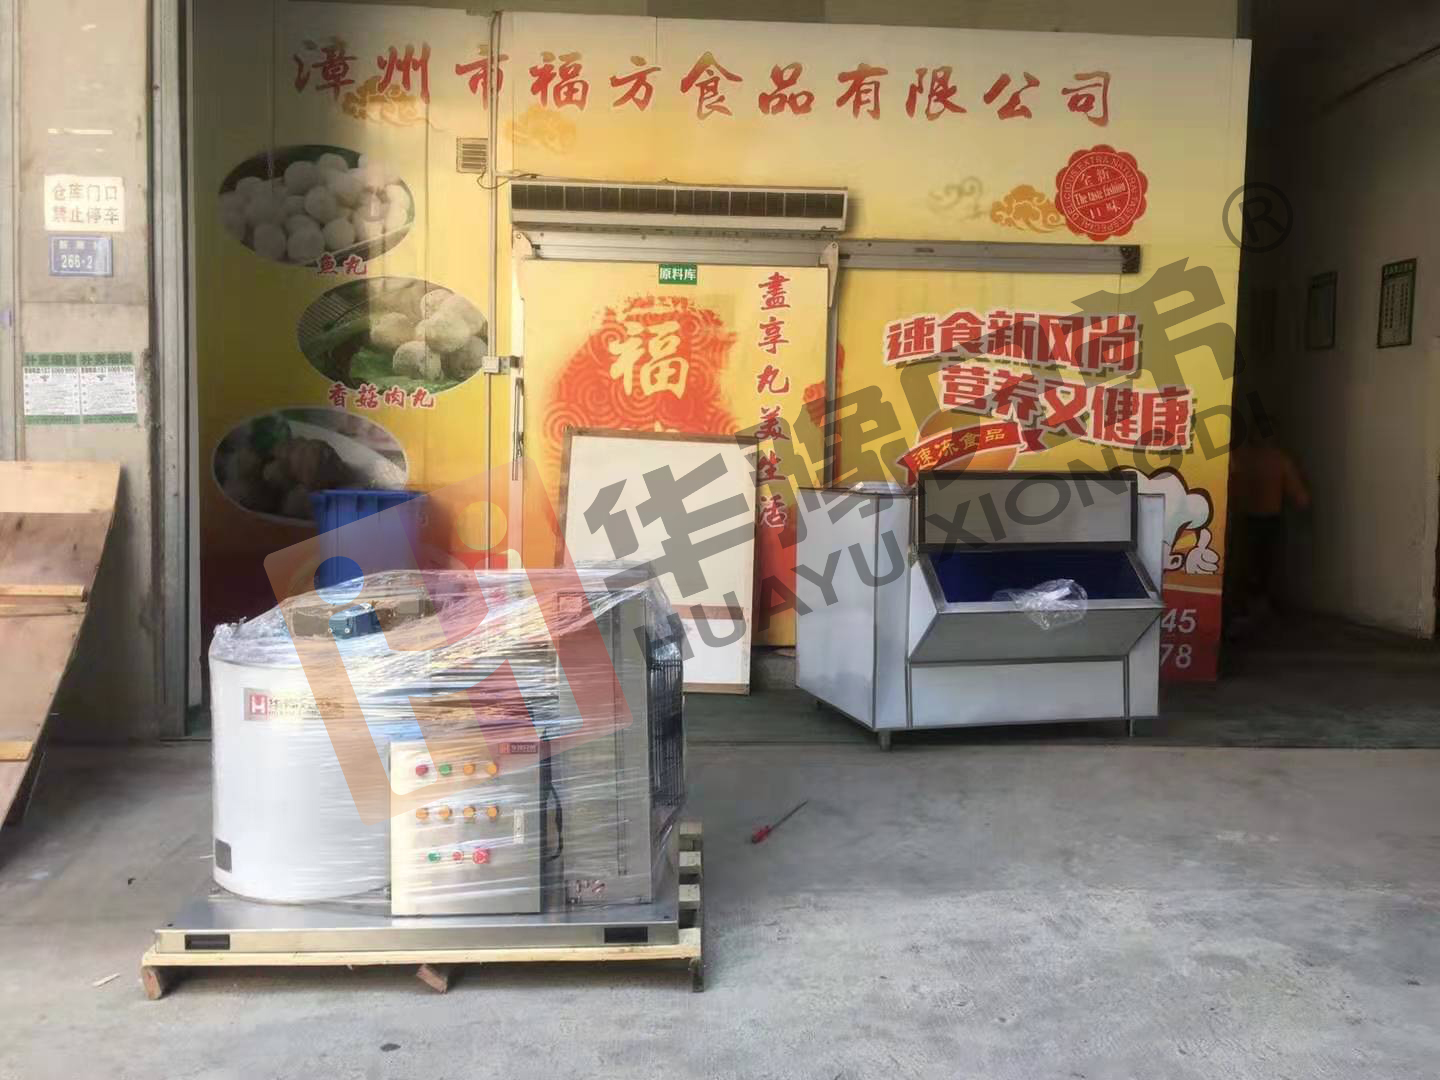 1吨不锈钢片冰机在漳州市福方食品安装调试完毕